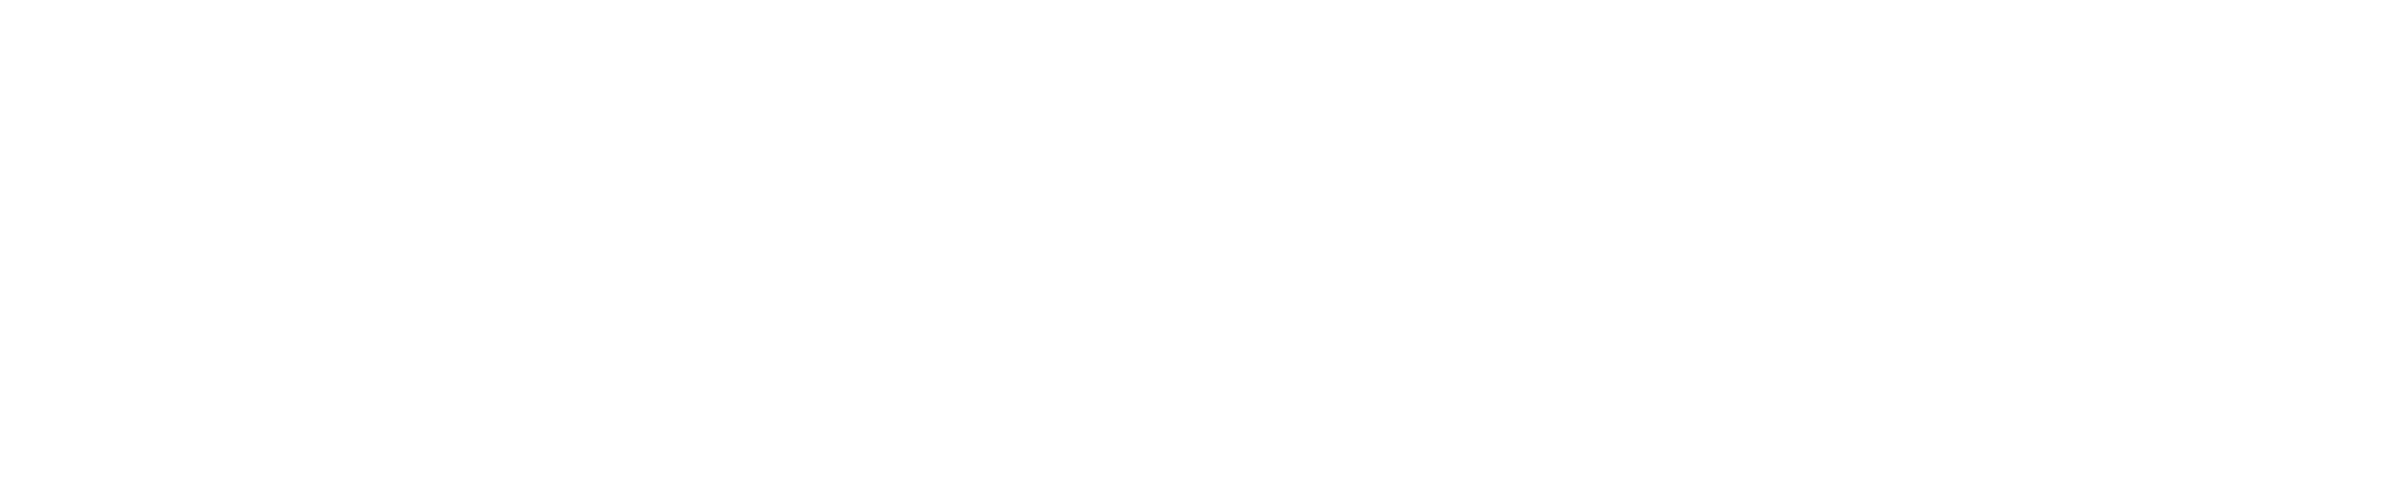 高崎市のガールズバー「ANNEX」のロゴ